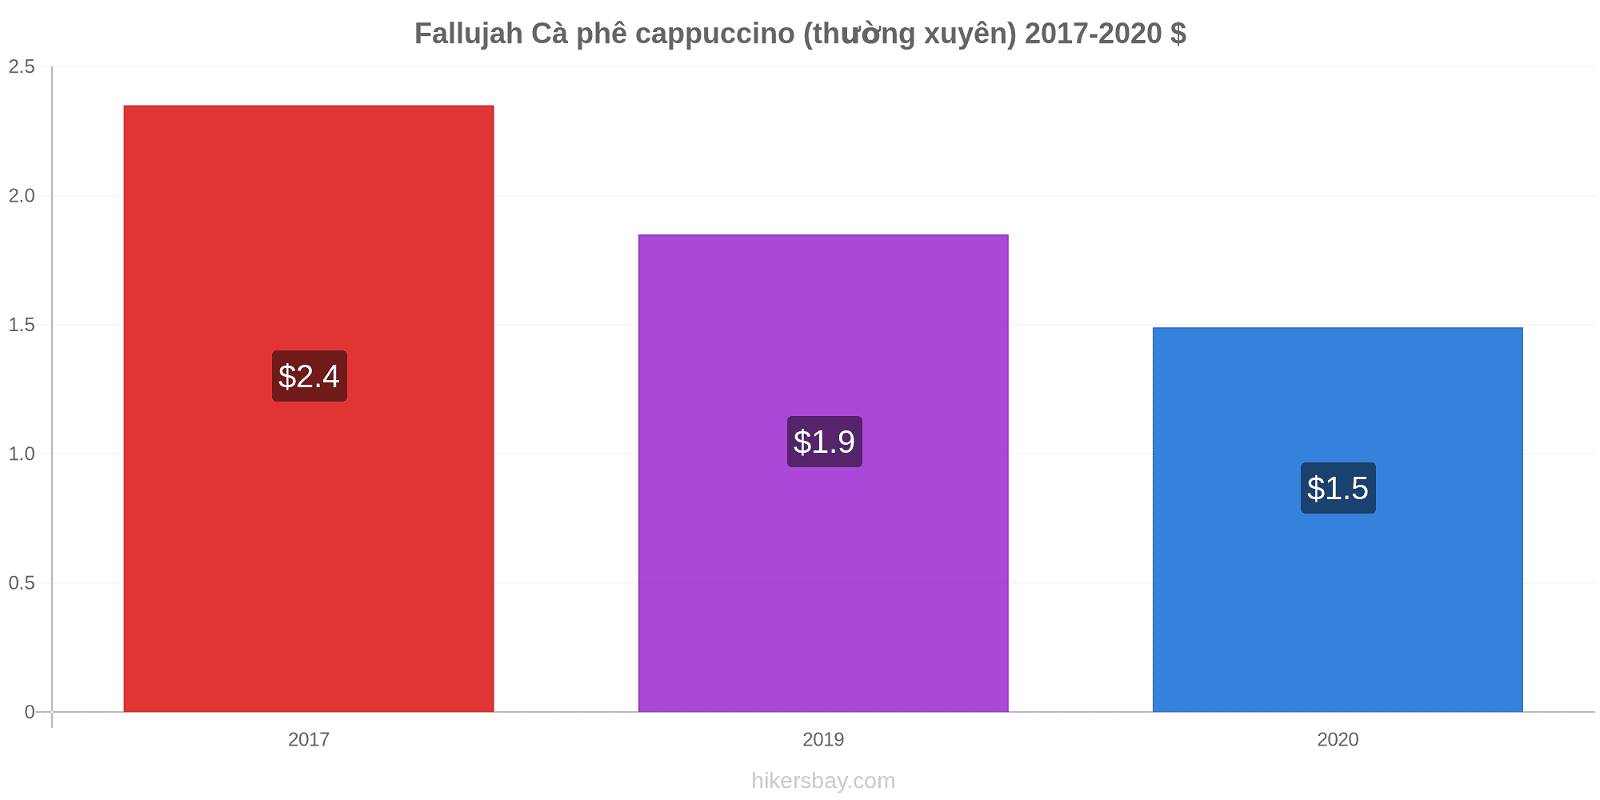 Fallujah thay đổi giá Cà phê cappuccino (thường xuyên) hikersbay.com